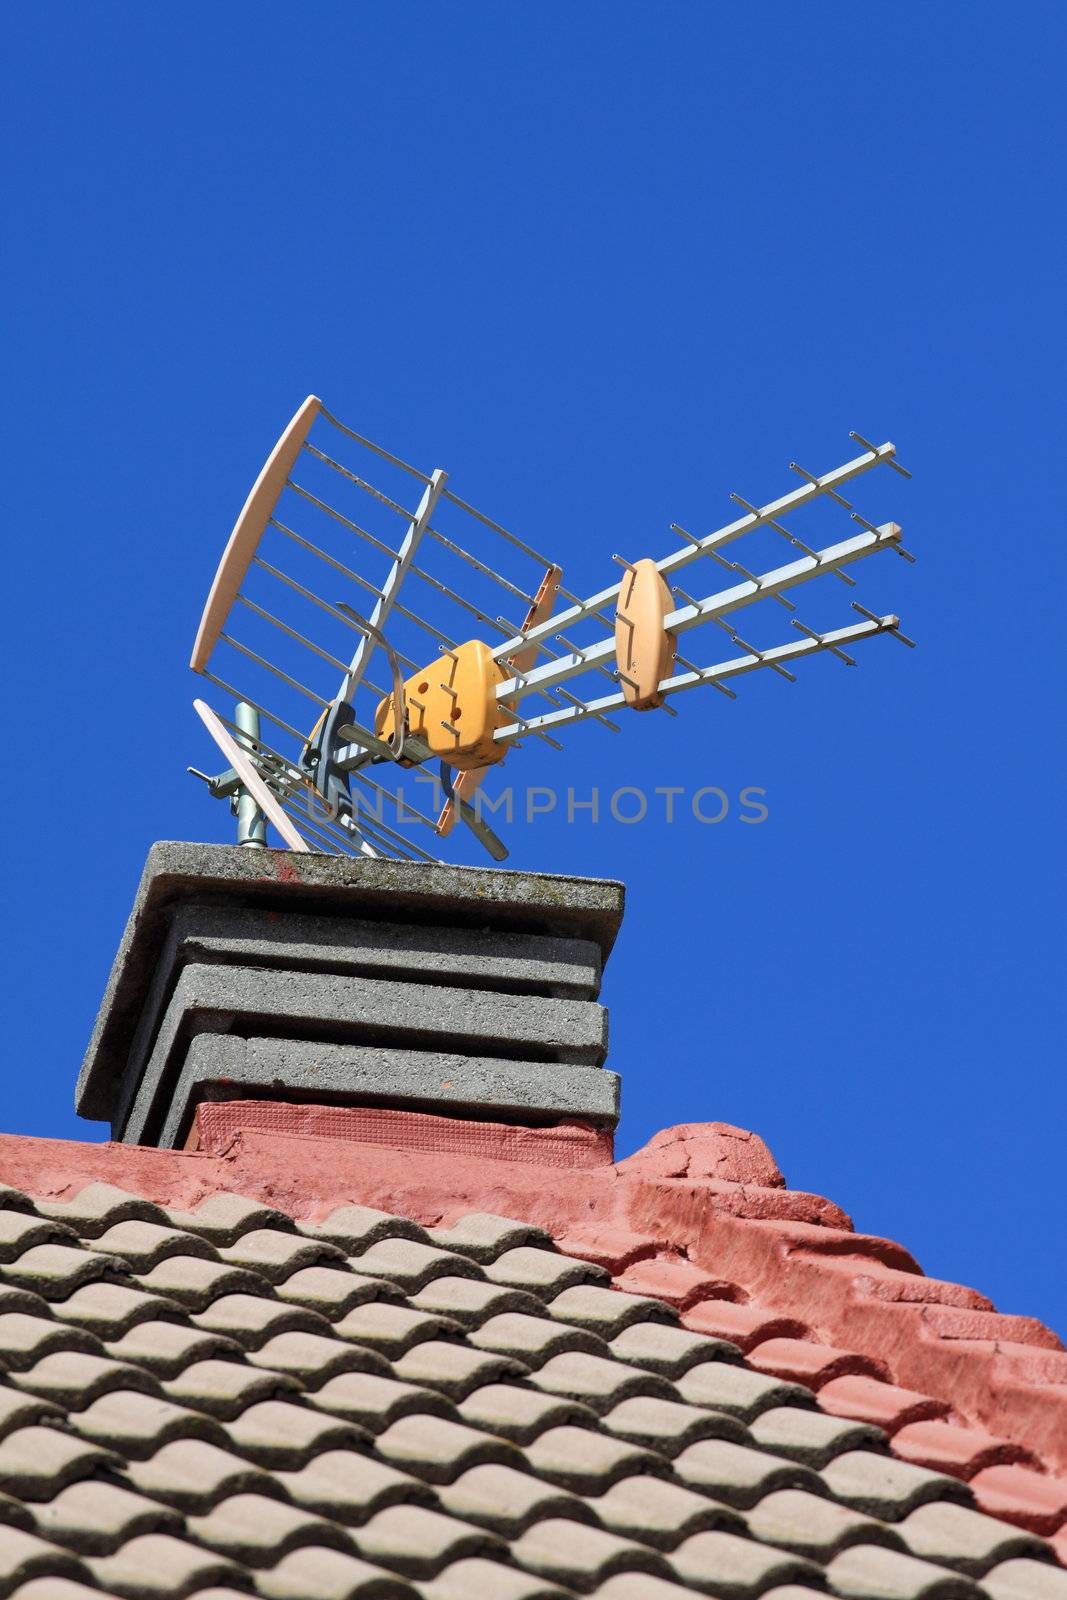 Antenna by mariusz_prusaczyk